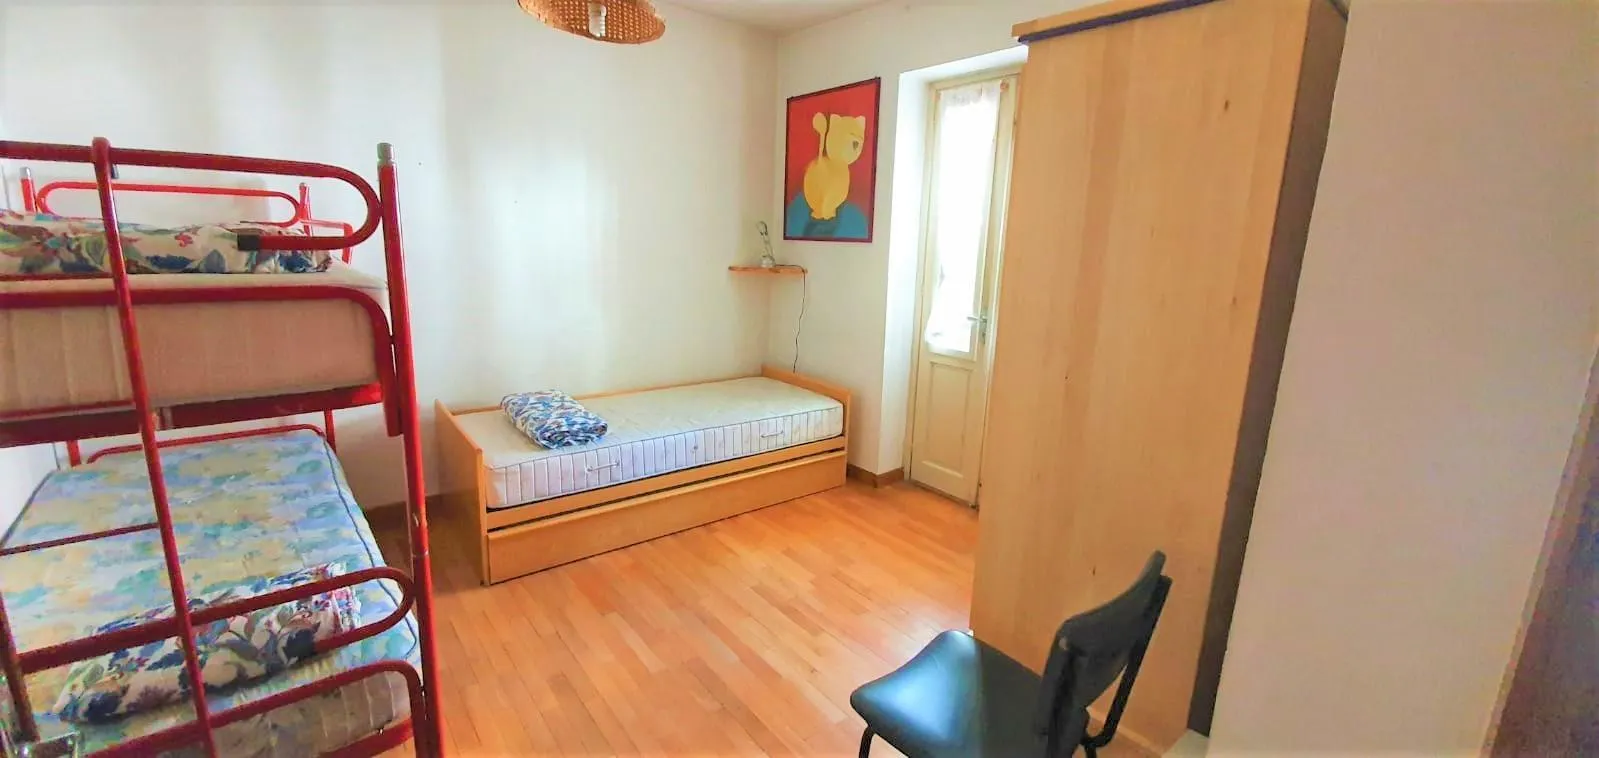 Immagine per Appartamento in affitto a Bardonecchia Via della Vecchia 16